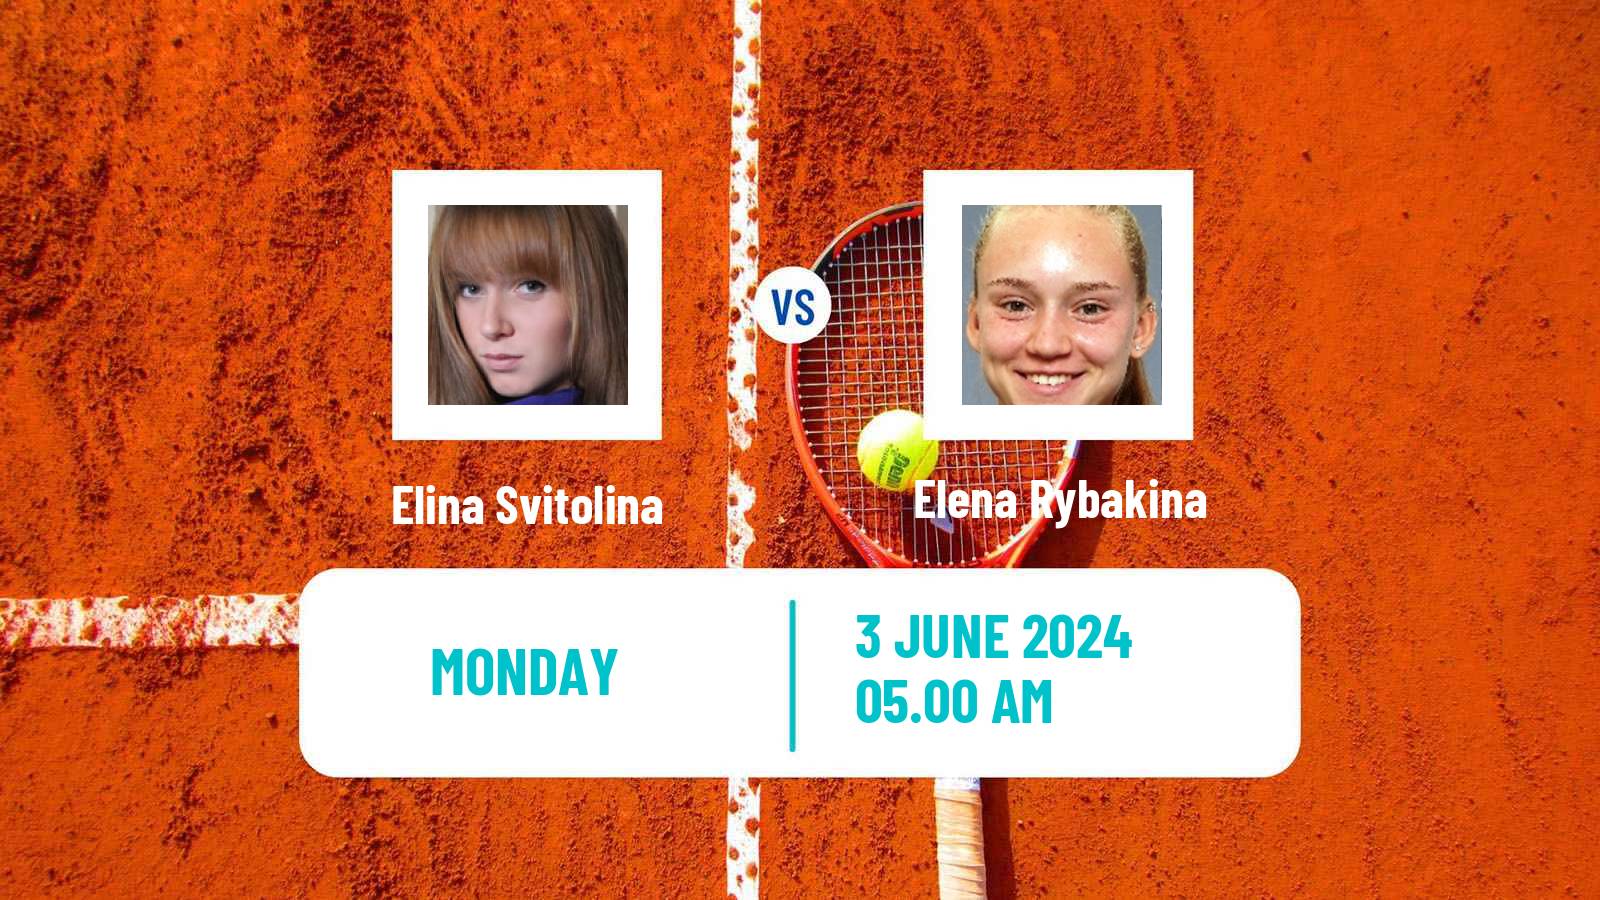 Tennis WTA Roland Garros Elina Svitolina - Elena Rybakina